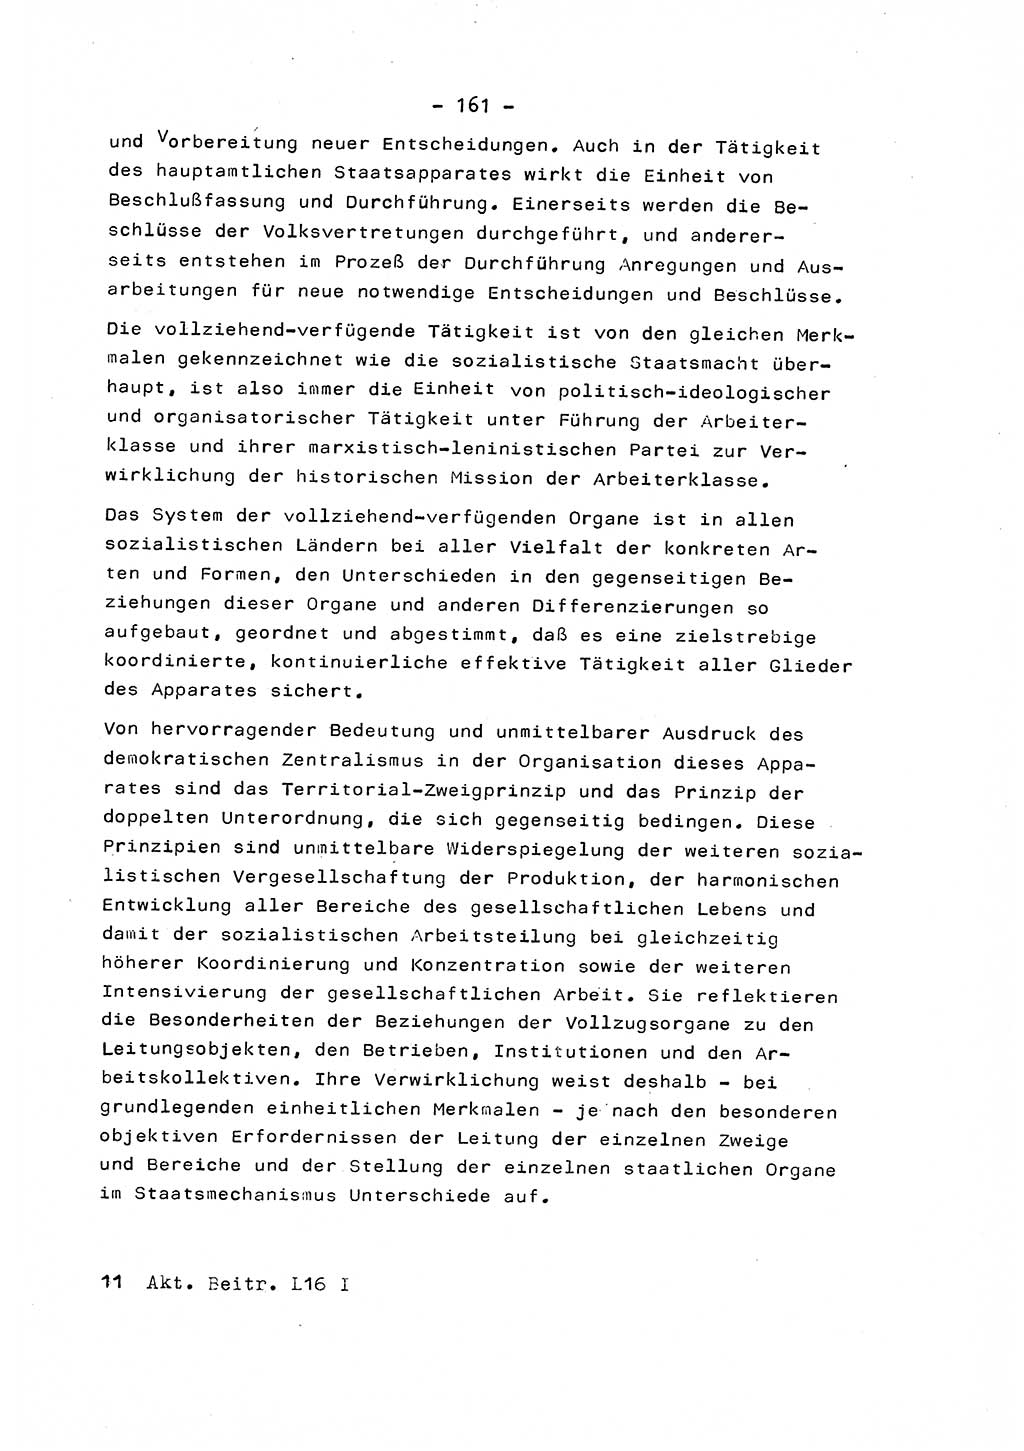 Marxistisch-leninistische Staats- und Rechtstheorie [Deutsche Demokratische Republik (DDR)] 1975, Seite 161 (ML St.-R.-Th. DDR 1975, S. 161)